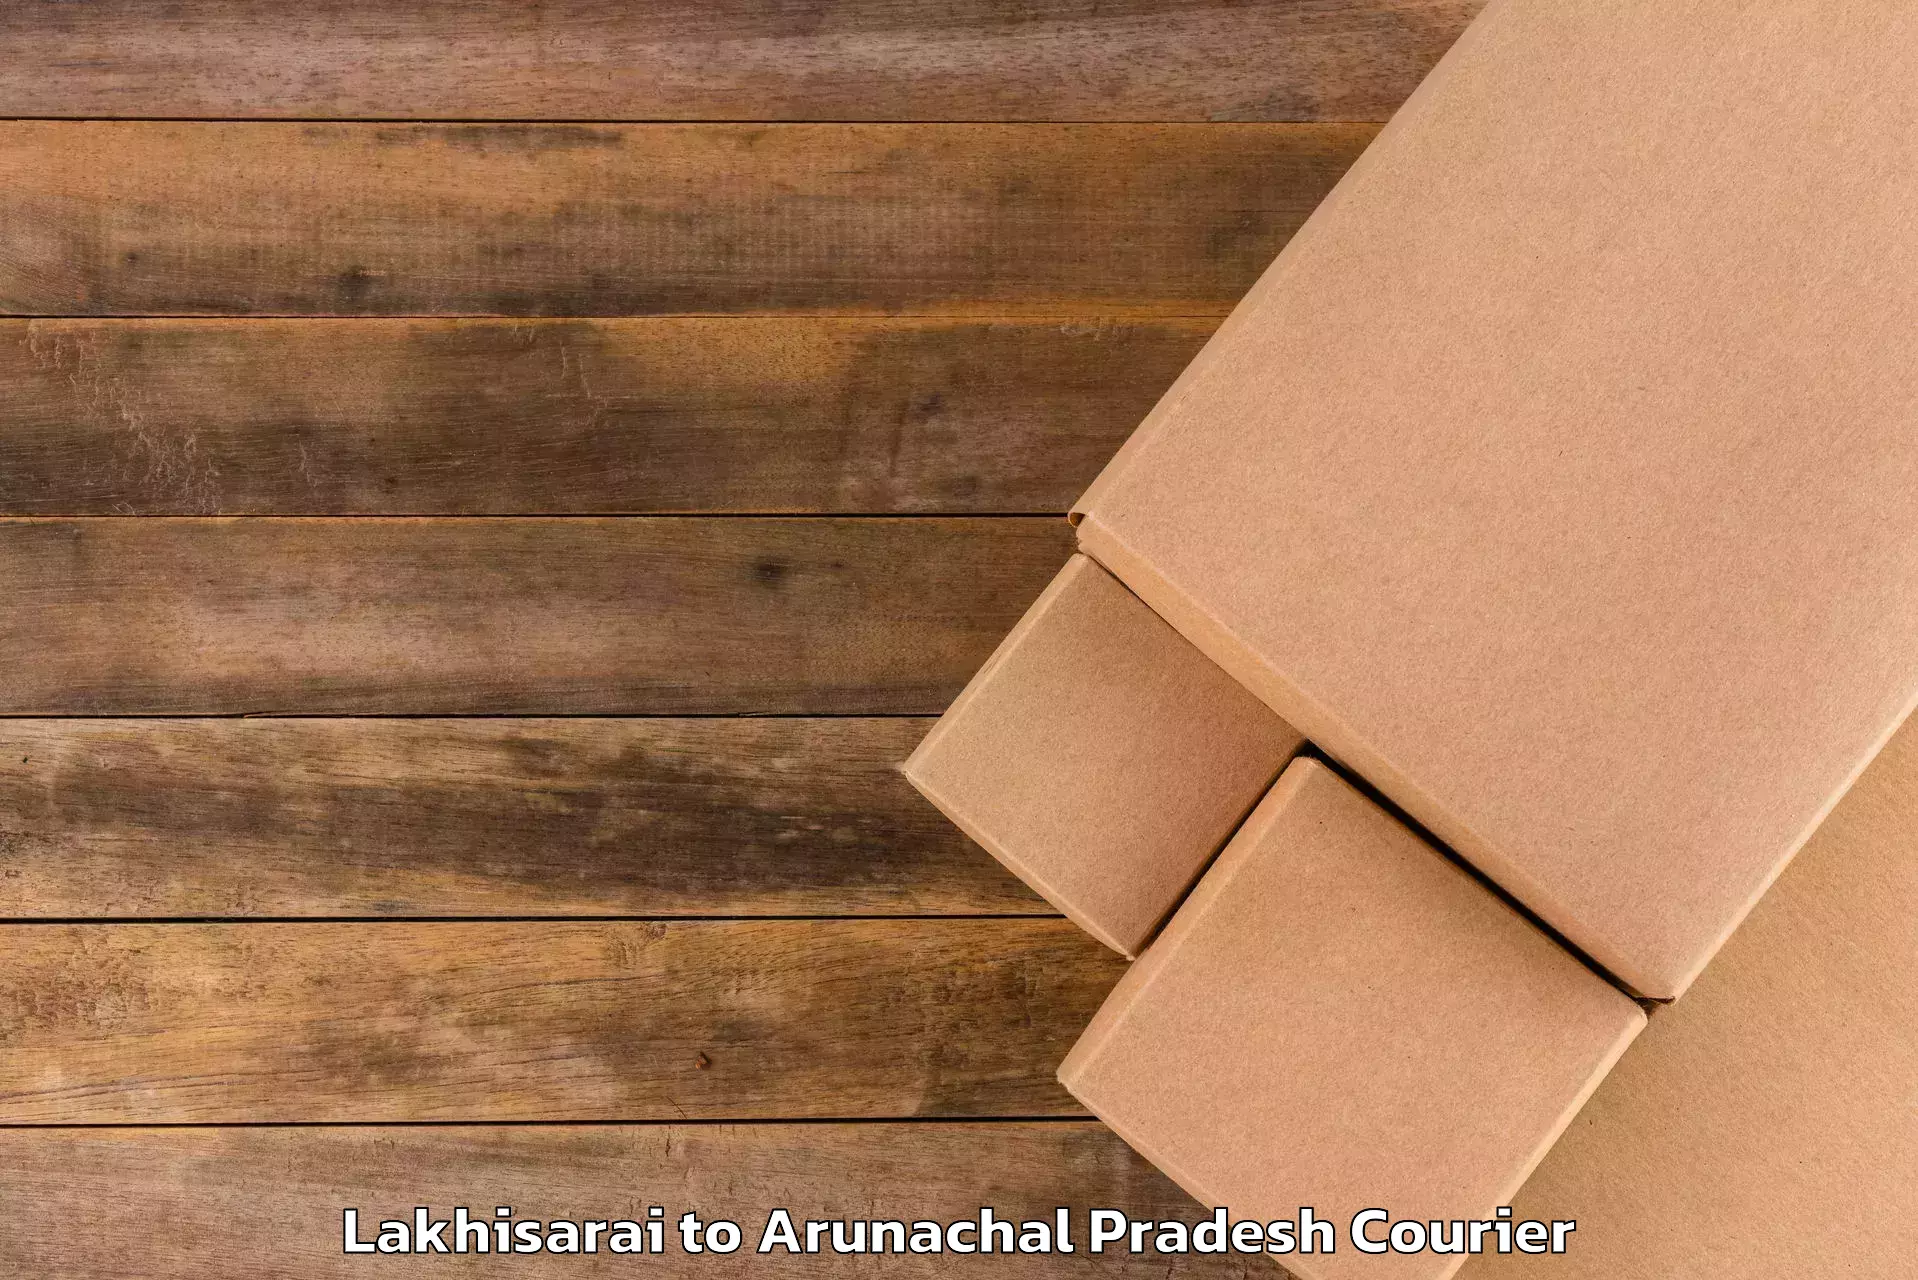 Luggage delivery app Lakhisarai to Nirjuli